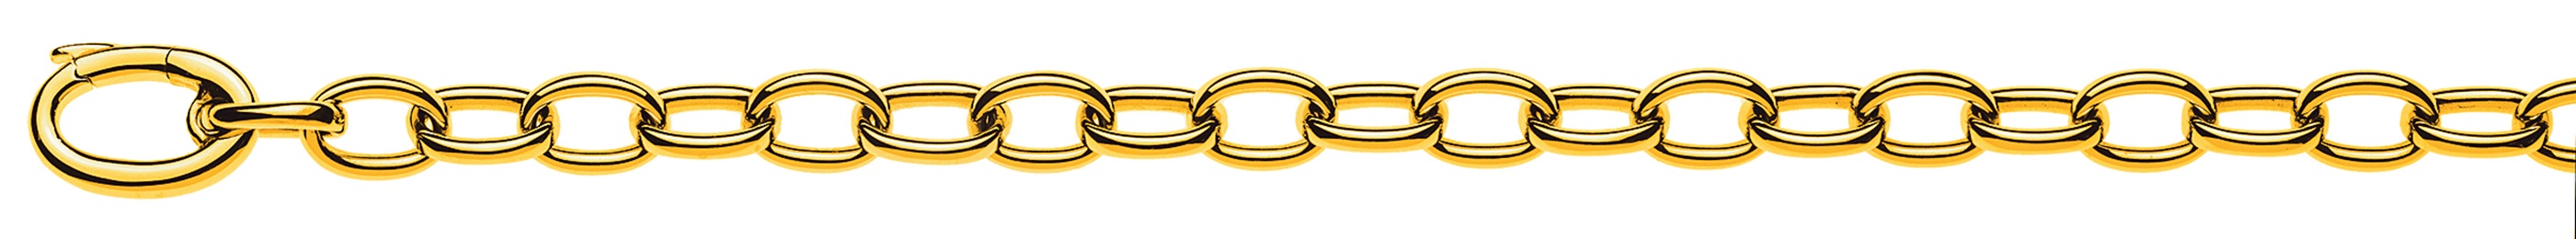 AURONOS Prestige Bracelet ancre or jaune 18 carats 20cm